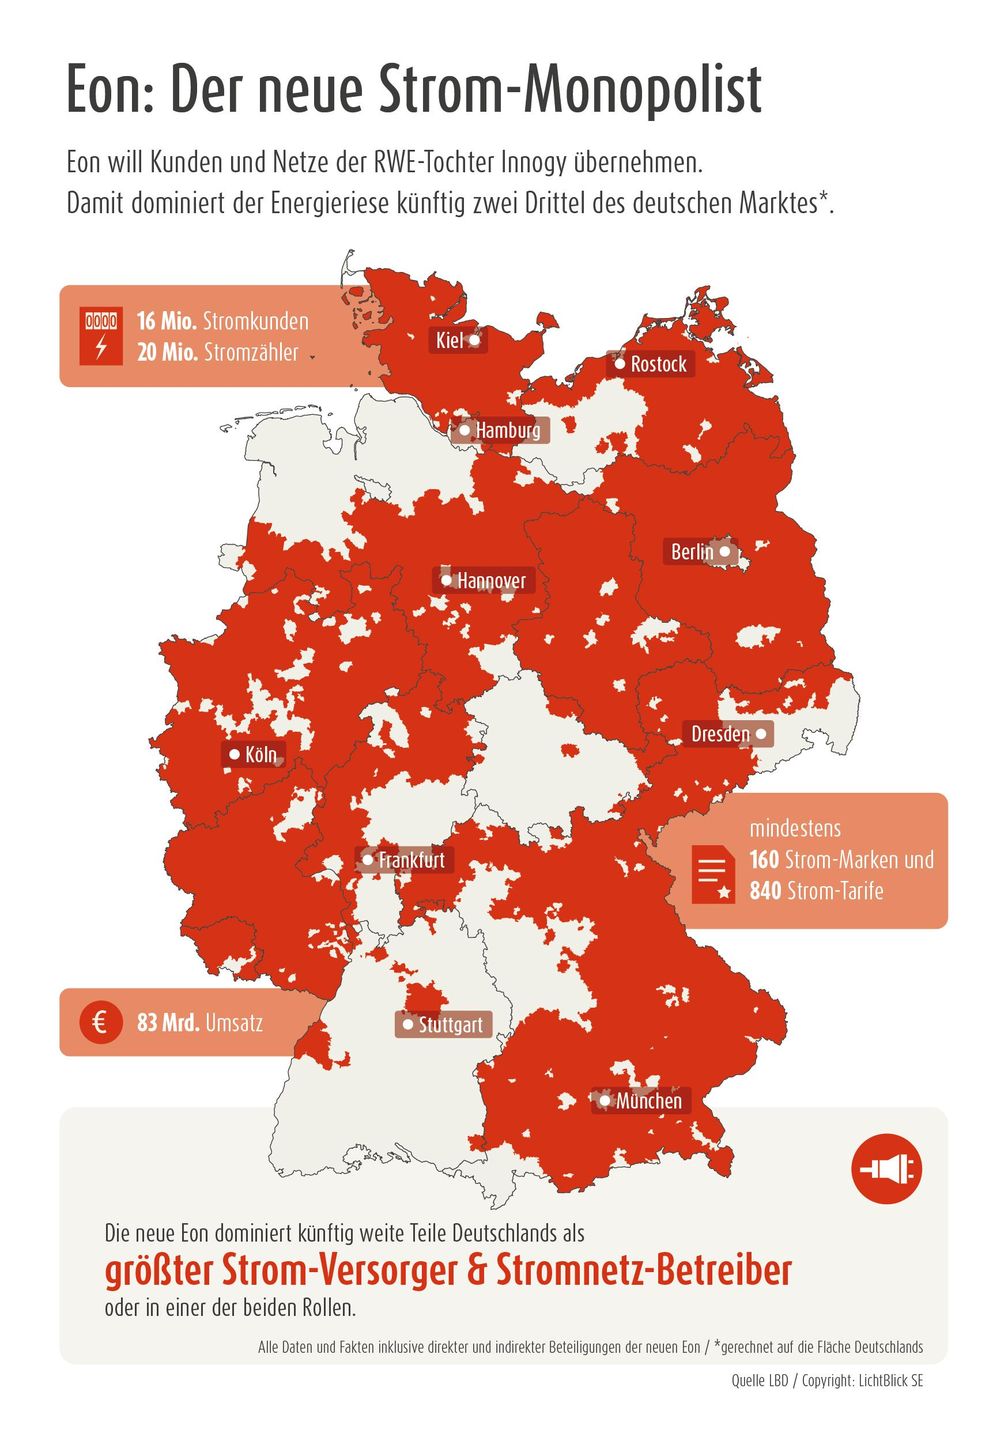 Die neue Eon dominiert künftig weite Teile Deutschlands als größter Strom-Versorger & Stromnetz-Betreiber. Bild: "obs/LichtBlick SE"